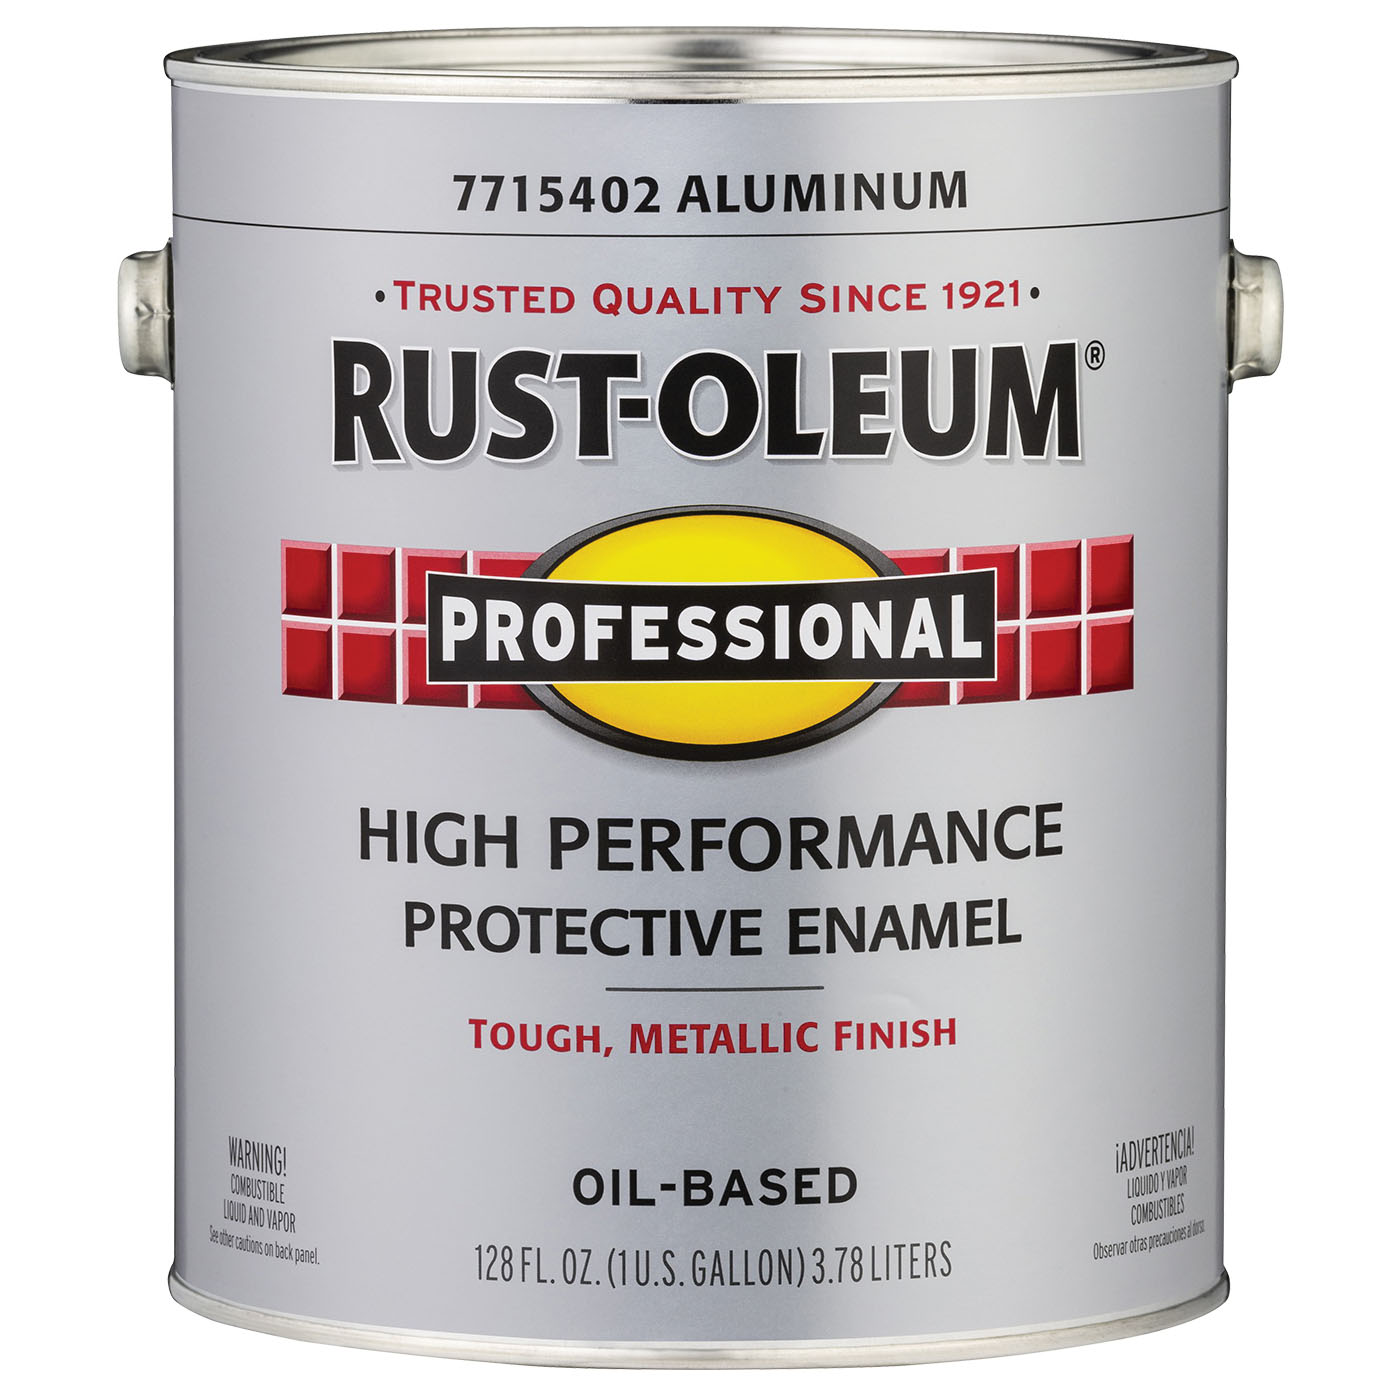 Rust-oleum 7715402